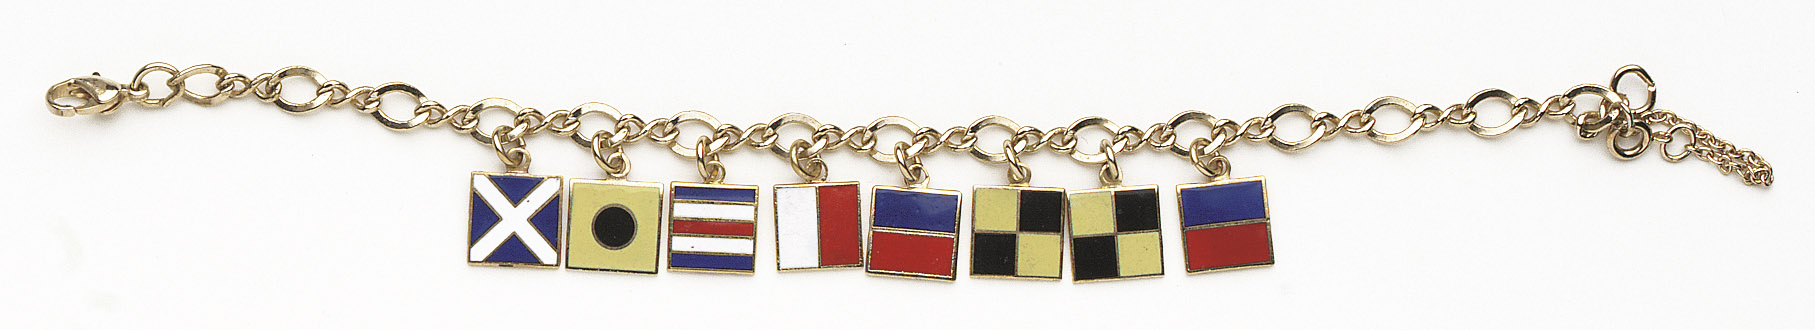 Codeflag Personalized Bracelet